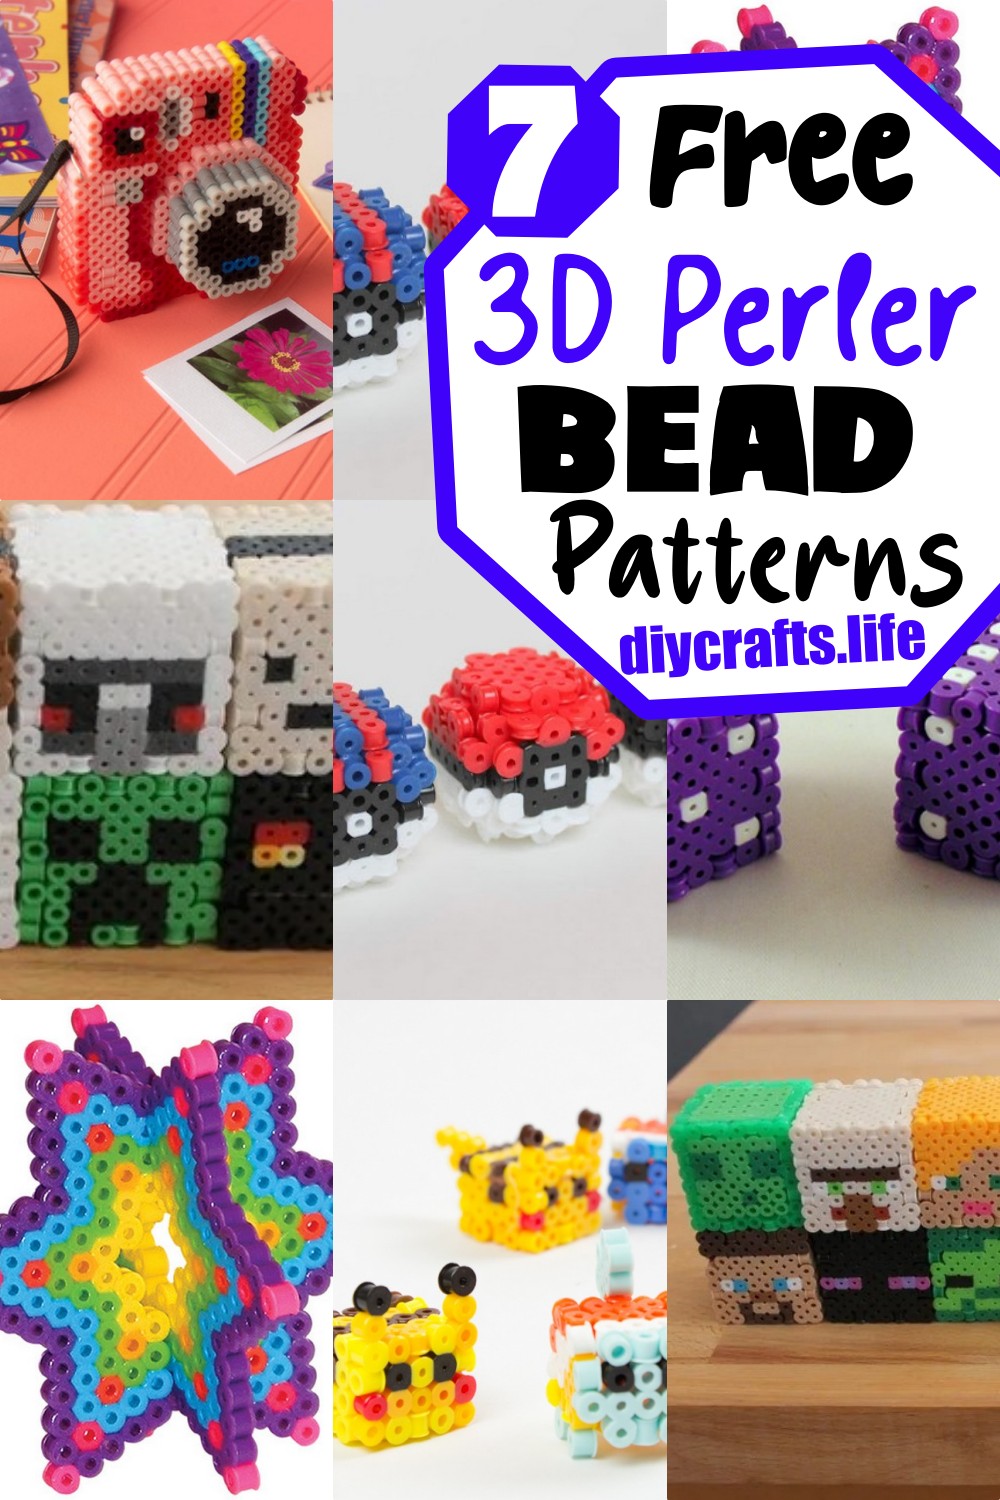 7 3D Perler Bead Patterns